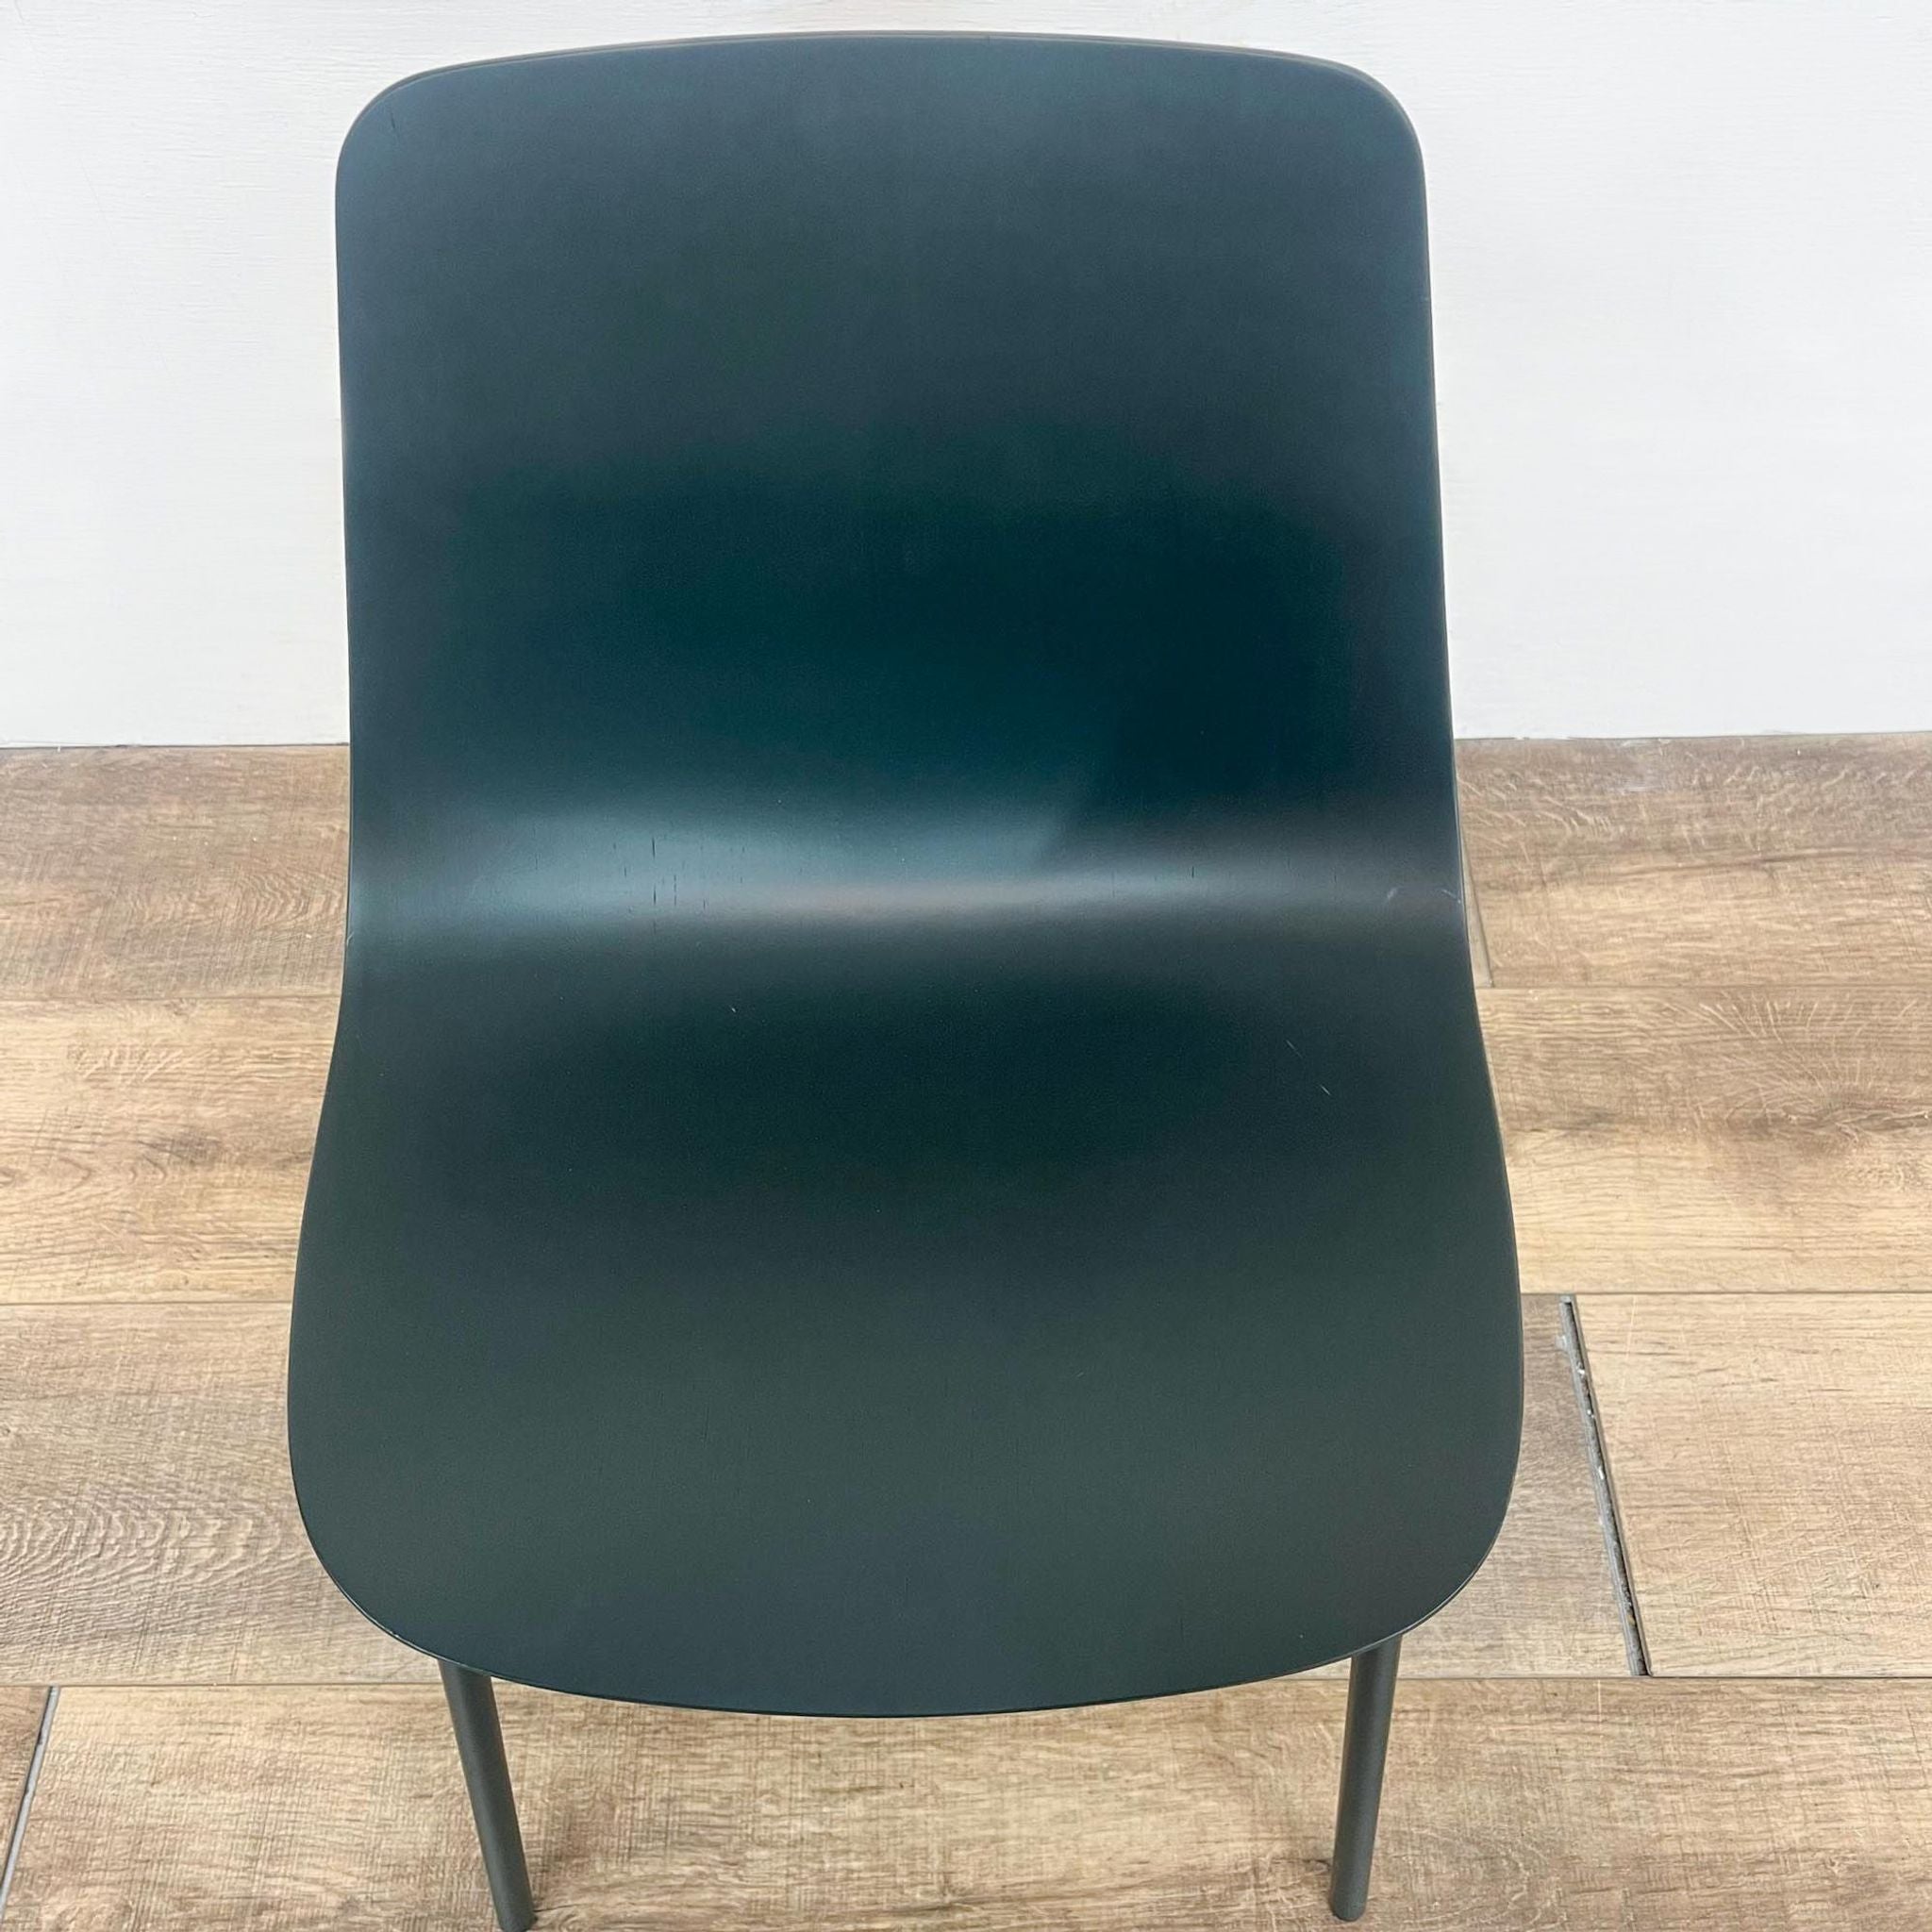 Blu Dot Clean Cut Chair